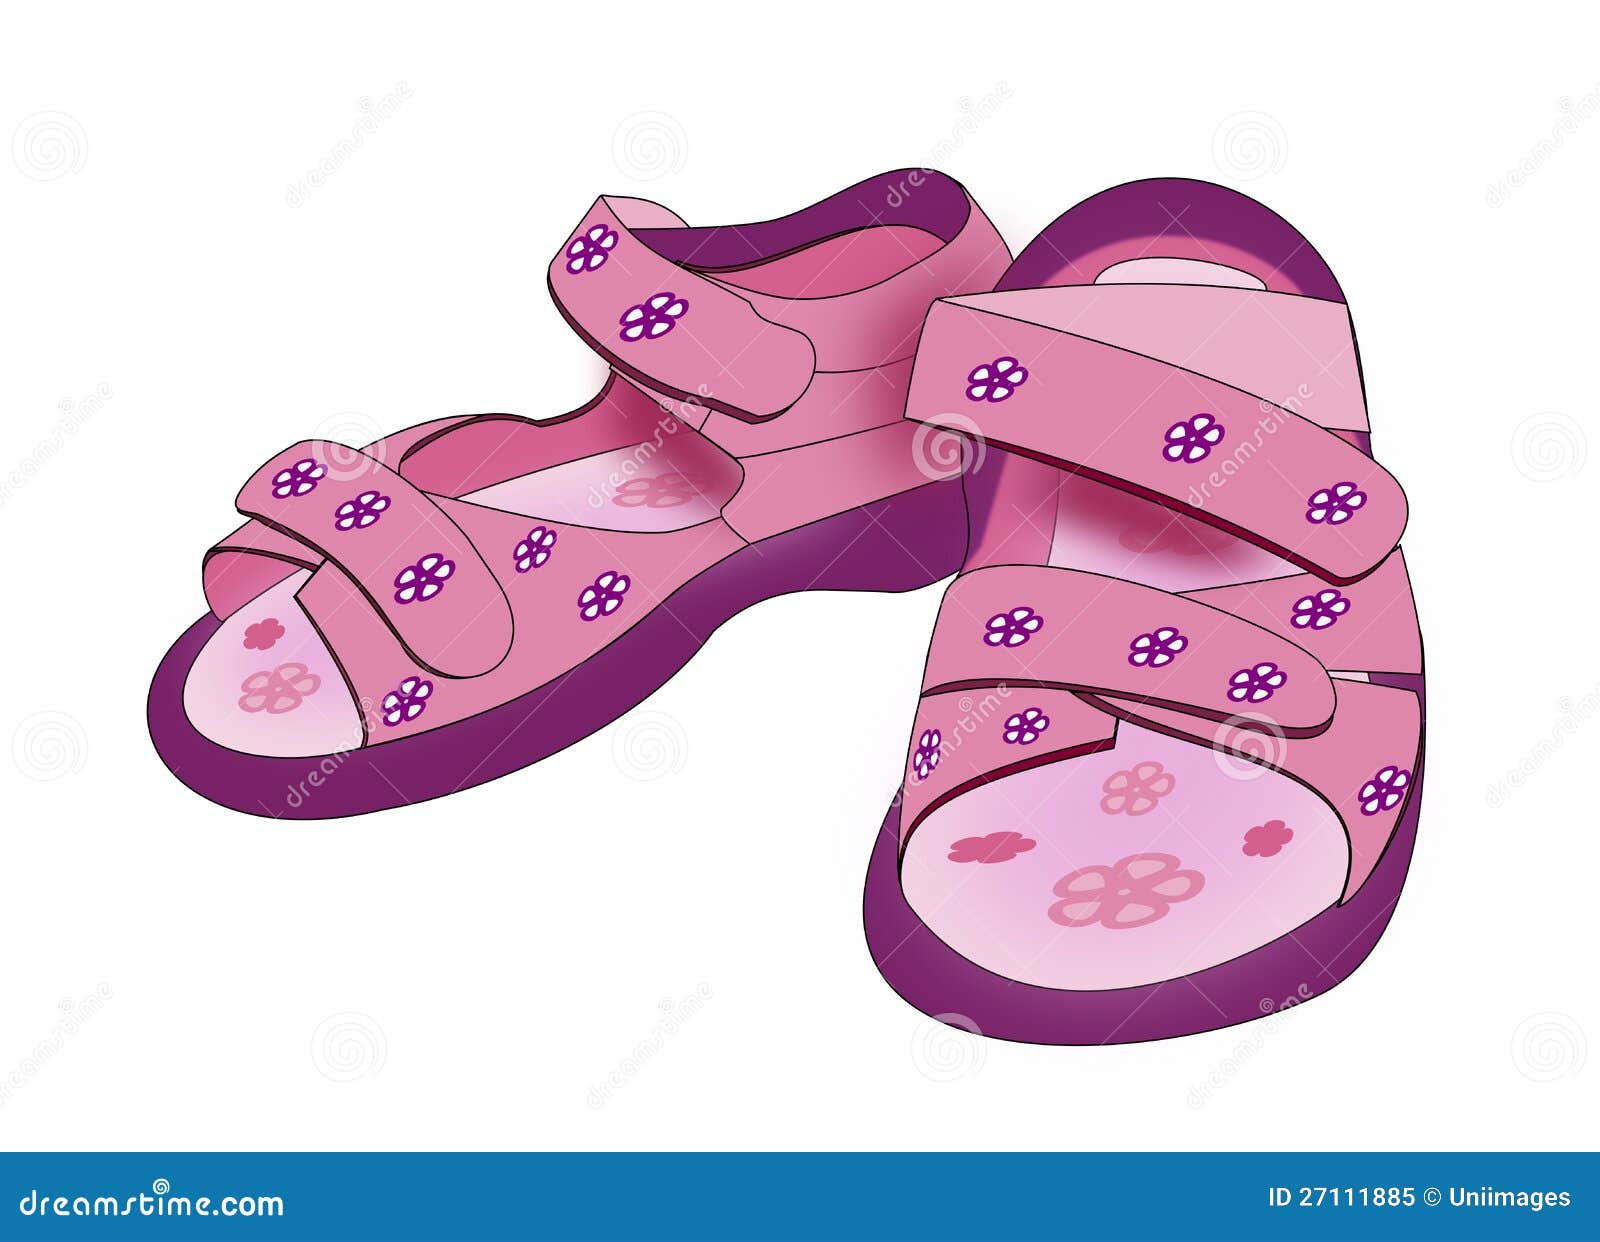 purple kids sandals